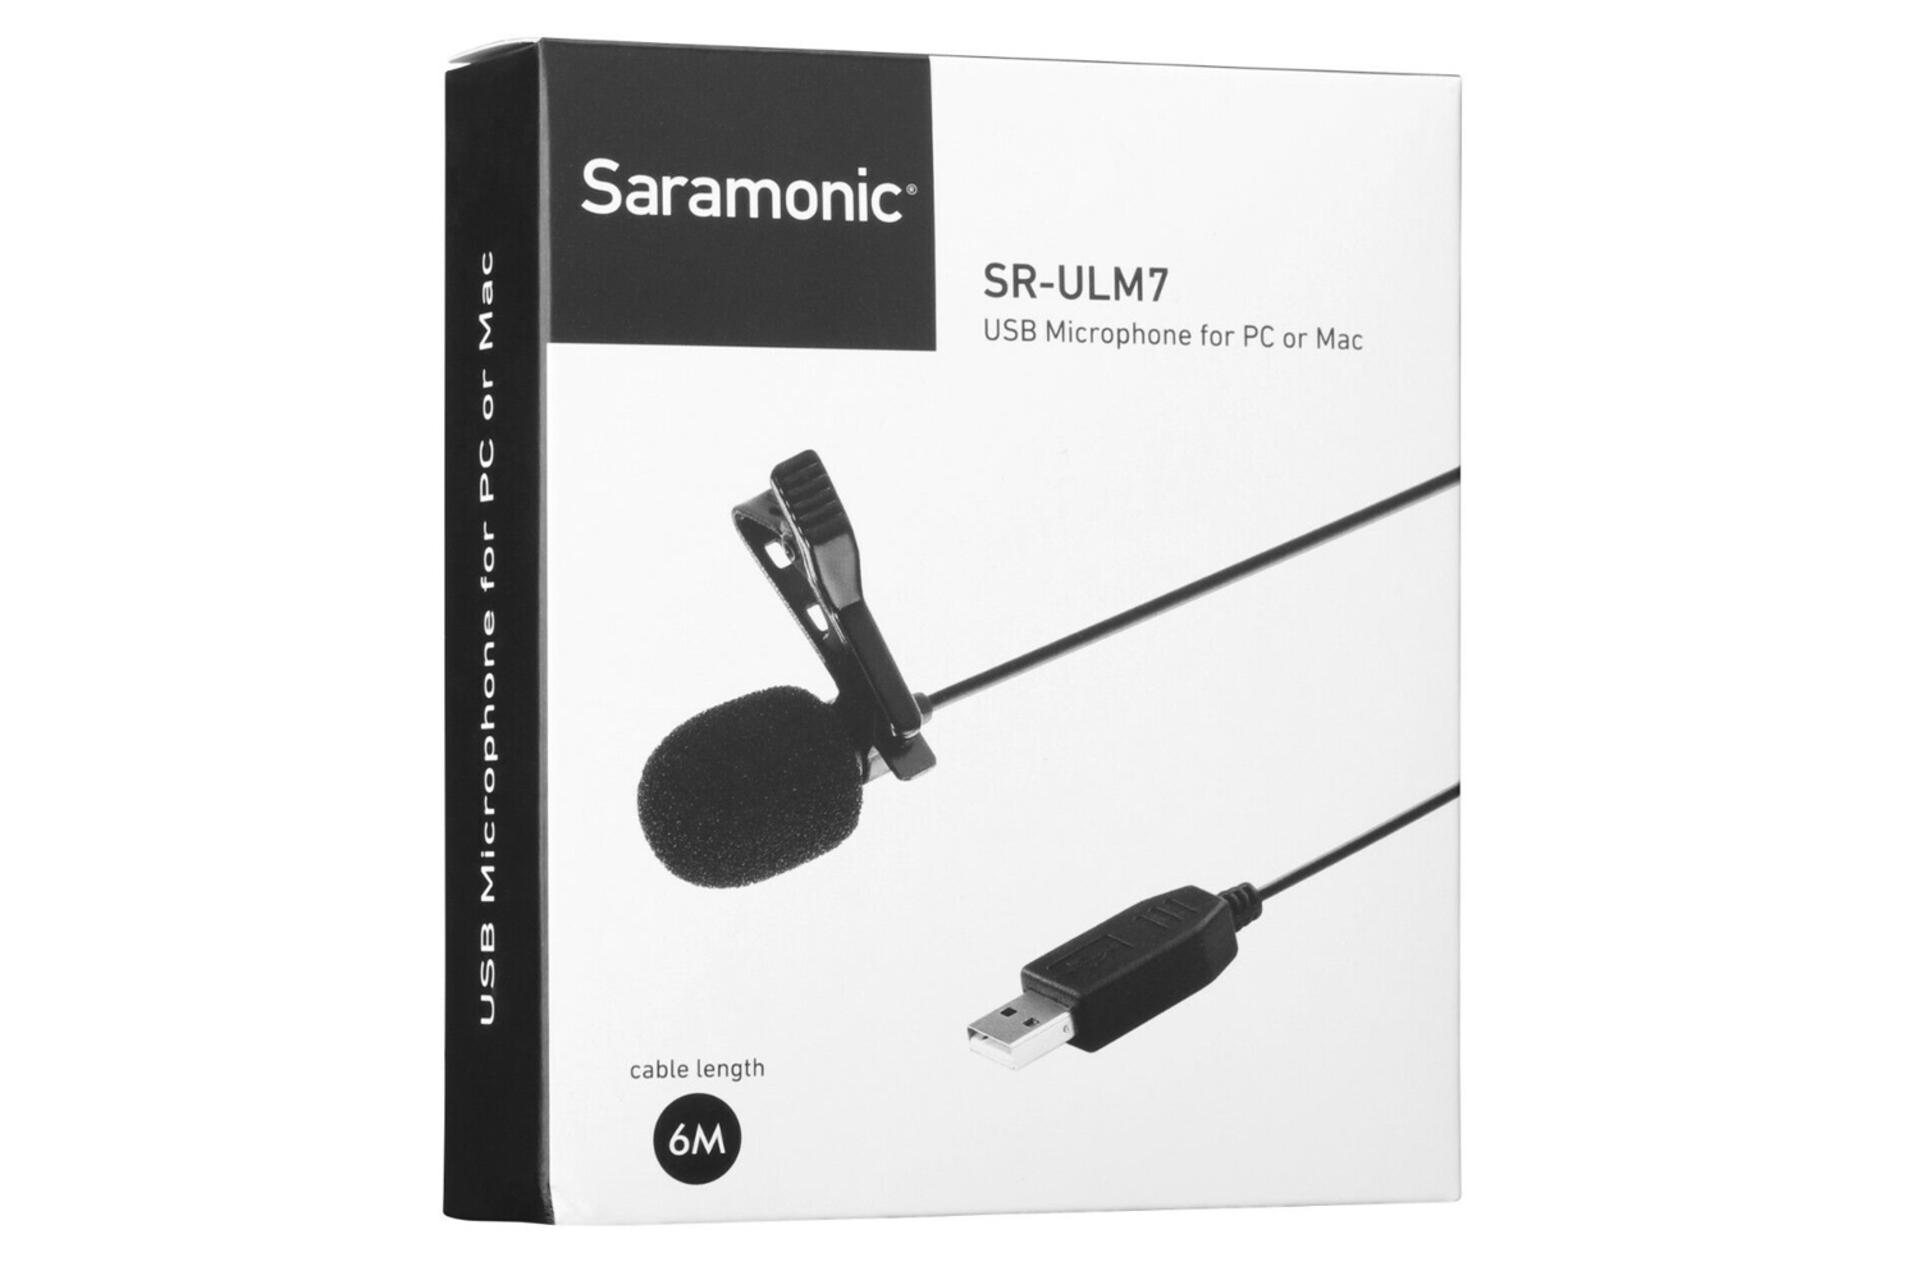 جعبه میکروفون سارامونیک Saramonic SR-Ulm7